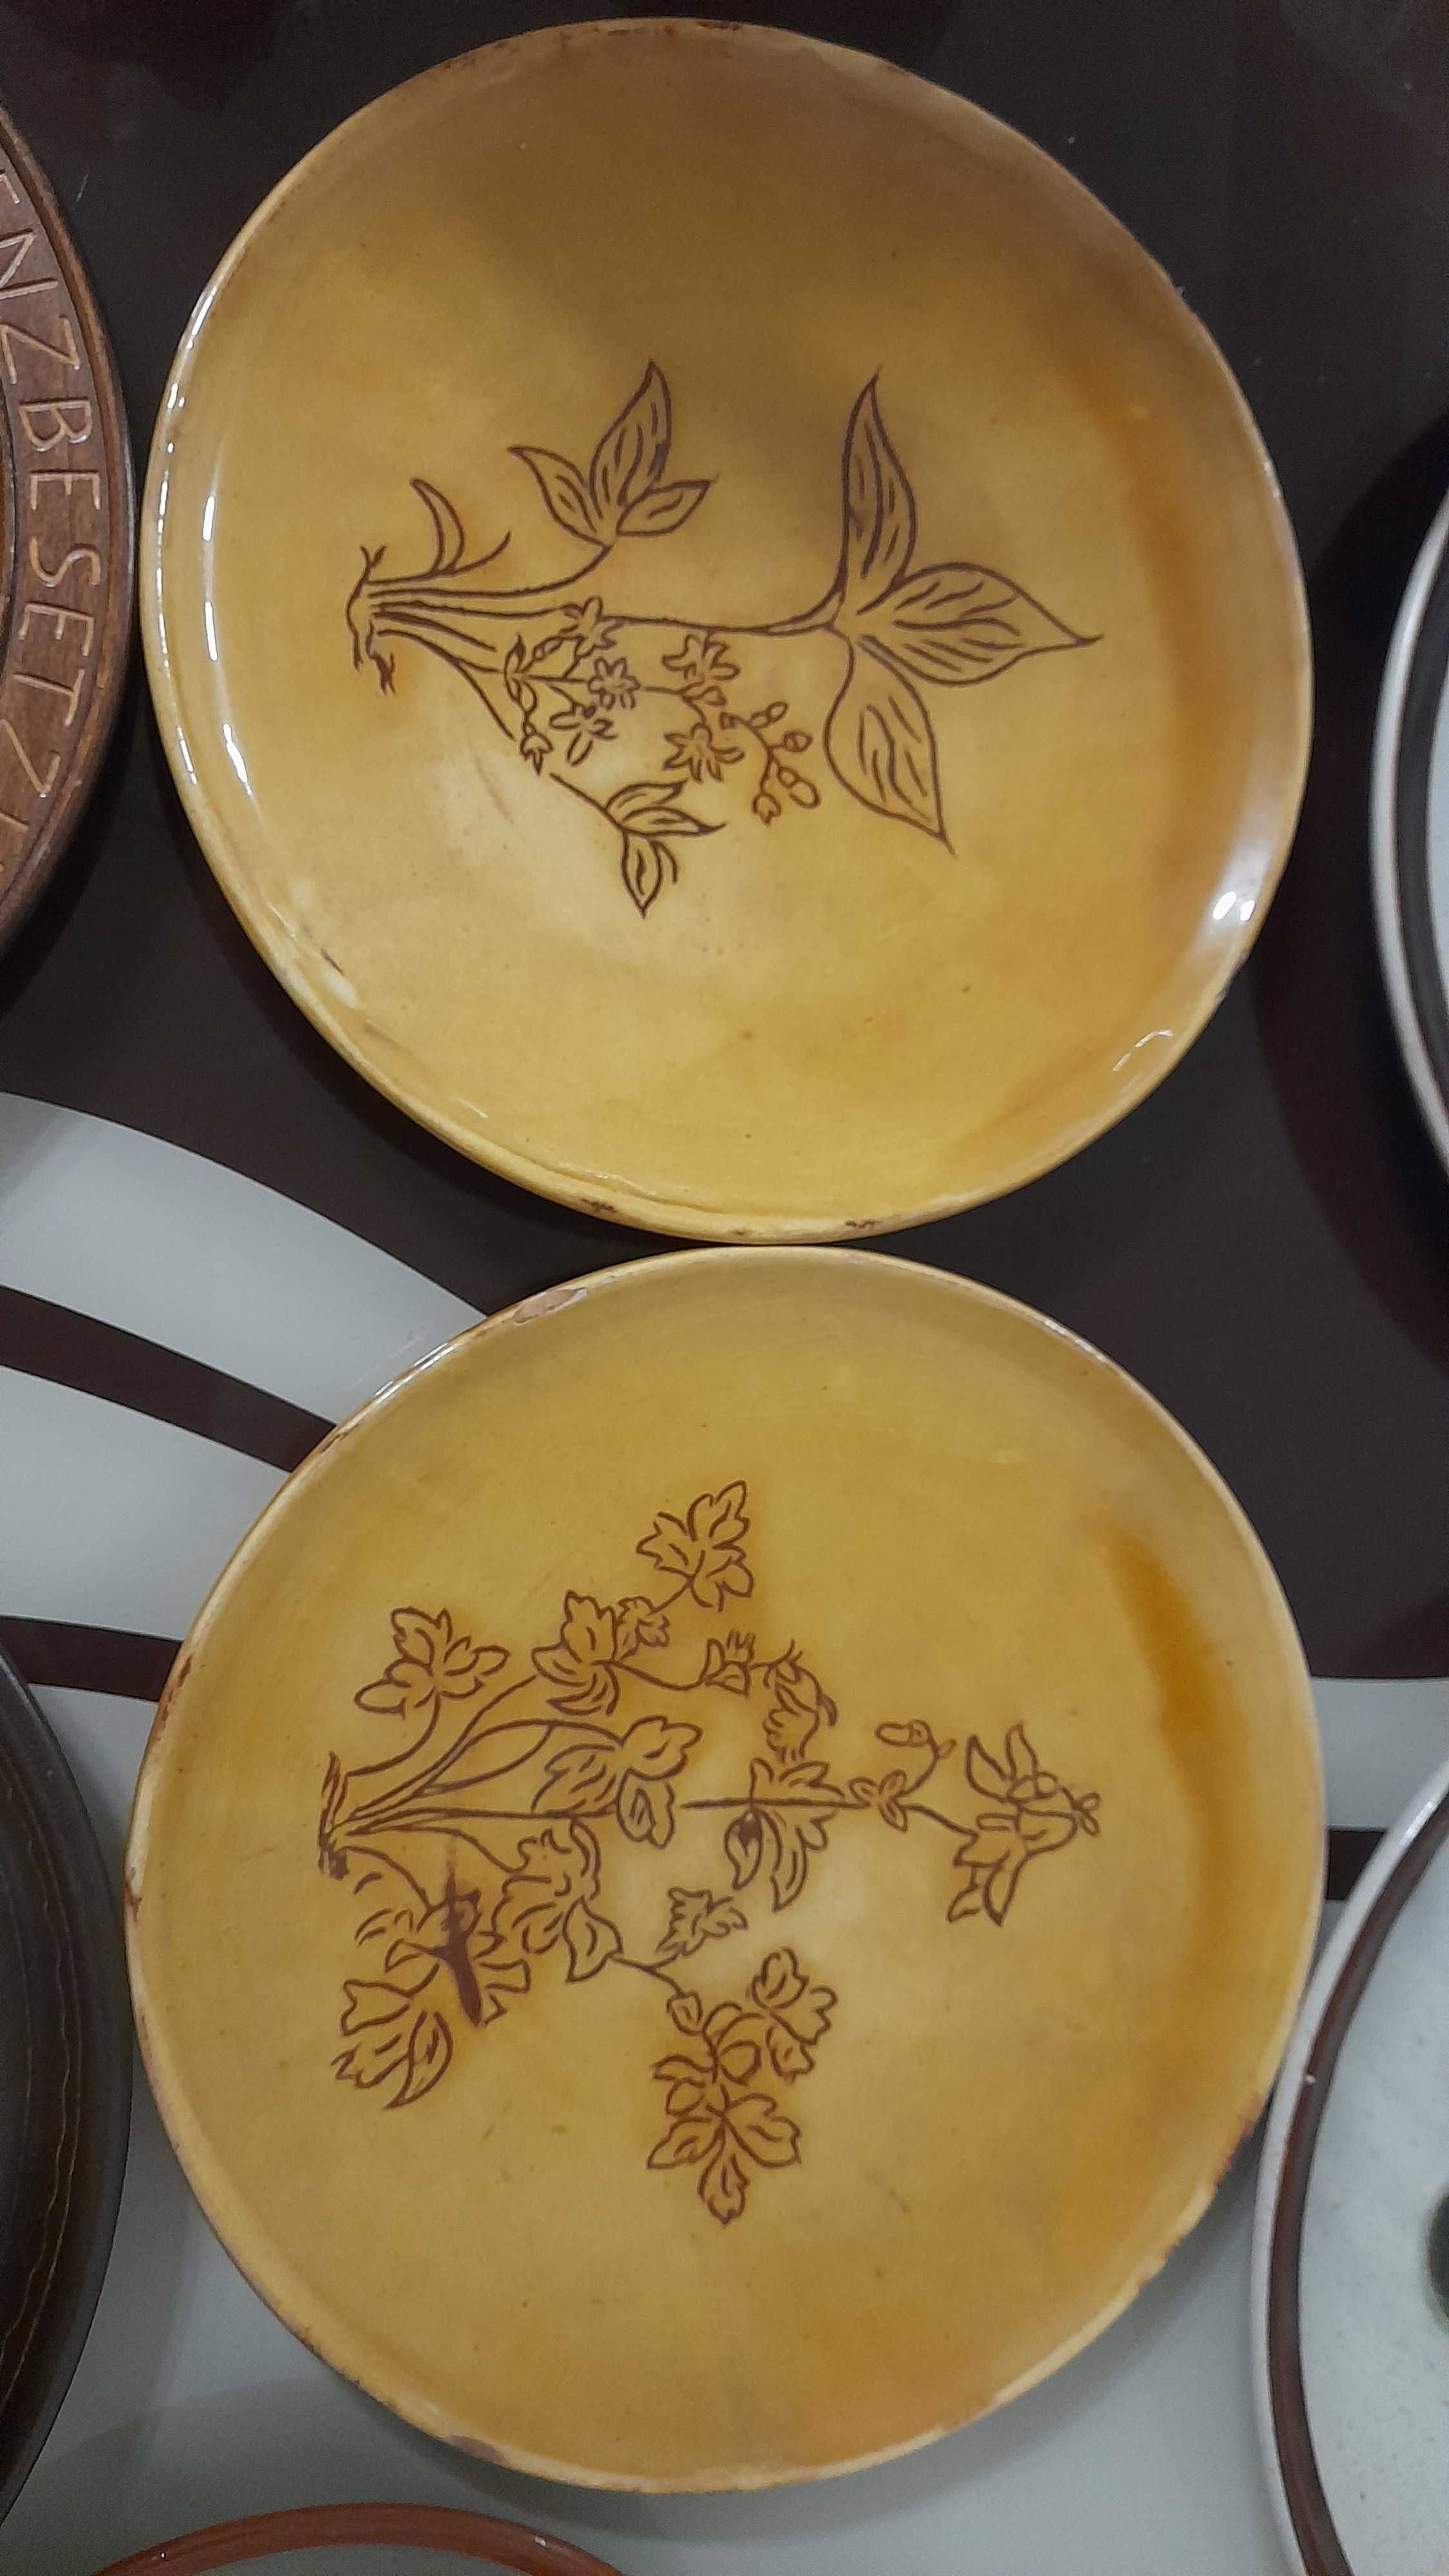 Diferite farfurii din ceramică vechi